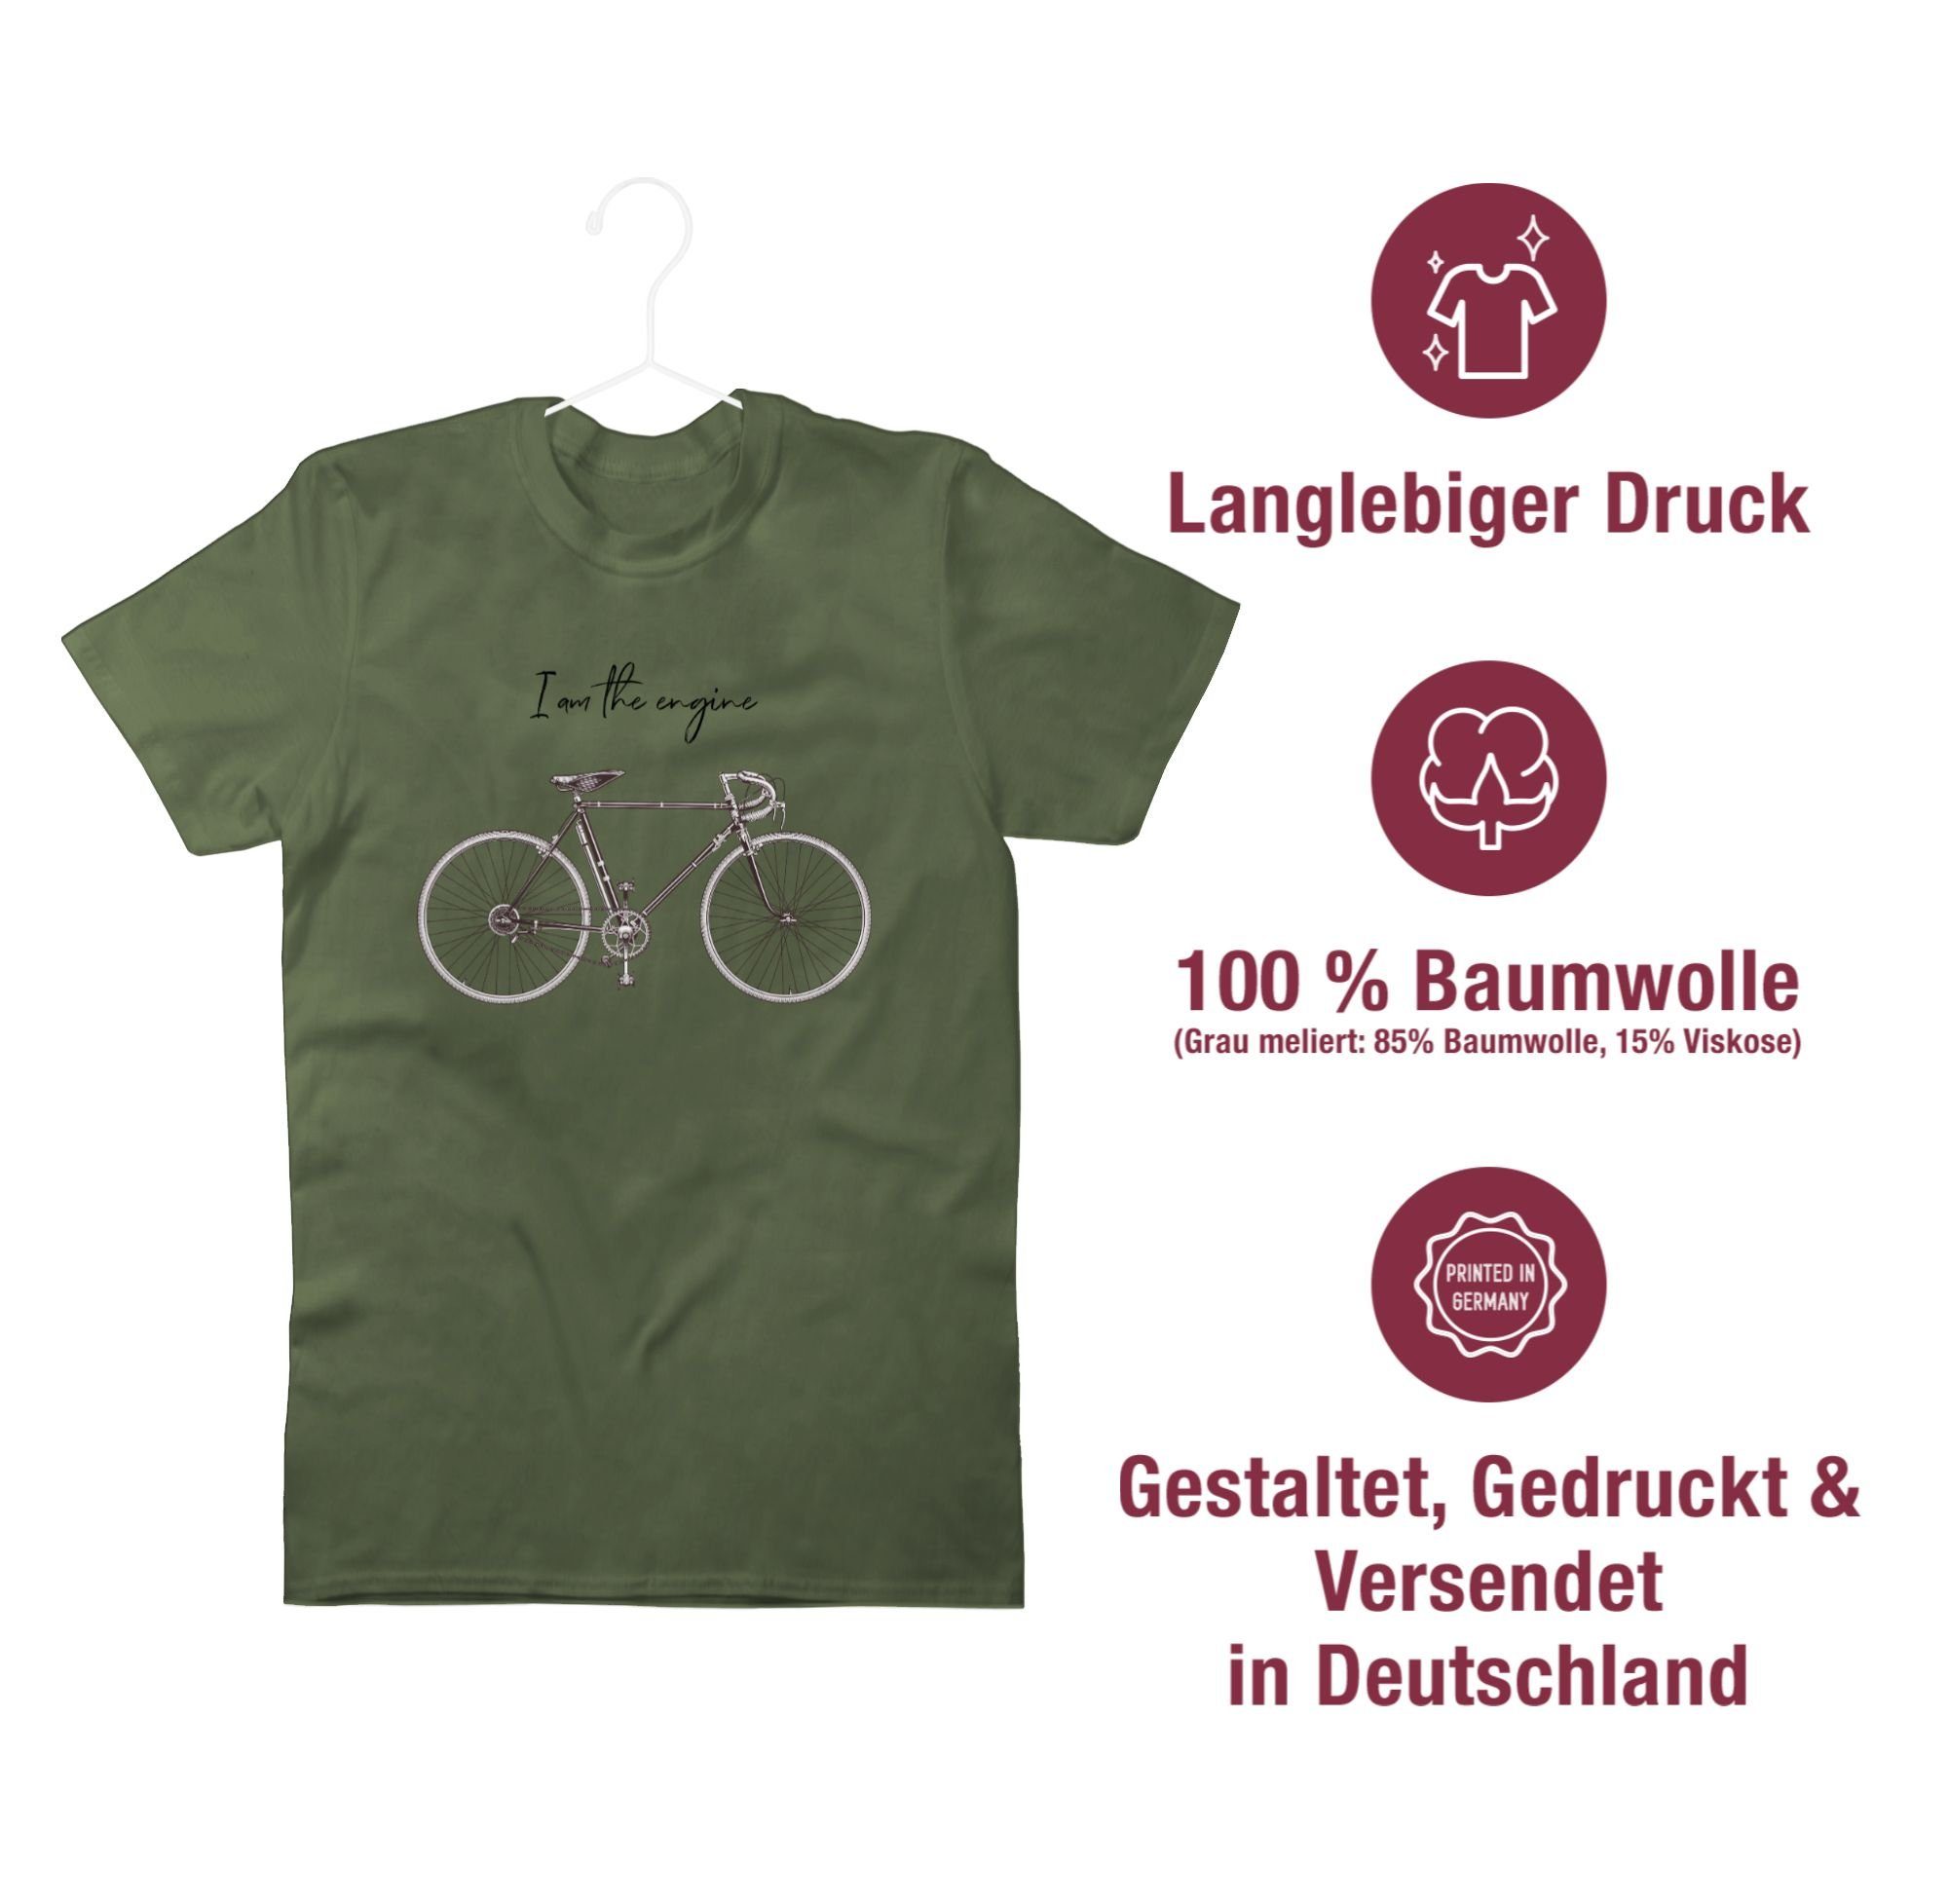 the T-Shirt engine Radsport - Grün - - tshirt geschenke Shirtracer army - fahrradshirt fahhrad am Fahrrad T-Shirt fahrradbekleidung Army I Premium 2 Bekleidung Herren -